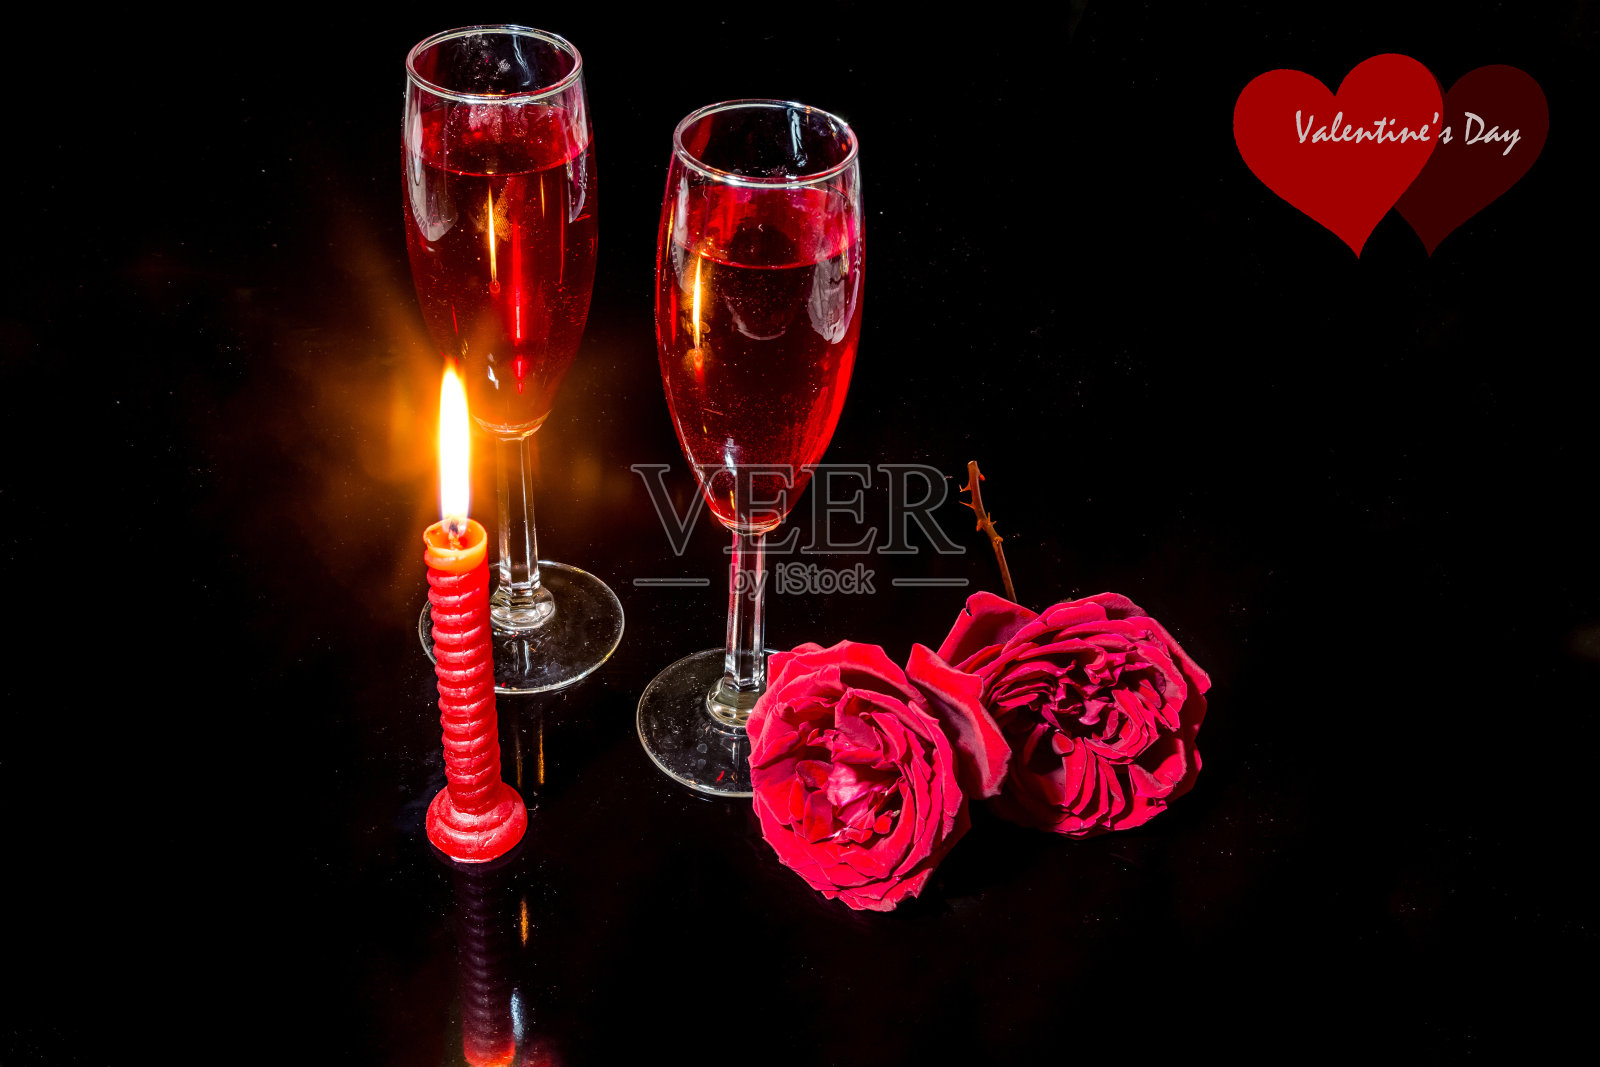 烛光、红玫瑰、红酒杯，映衬着黑暗的背景，营造出浪漫的氛围。照片摄影图片